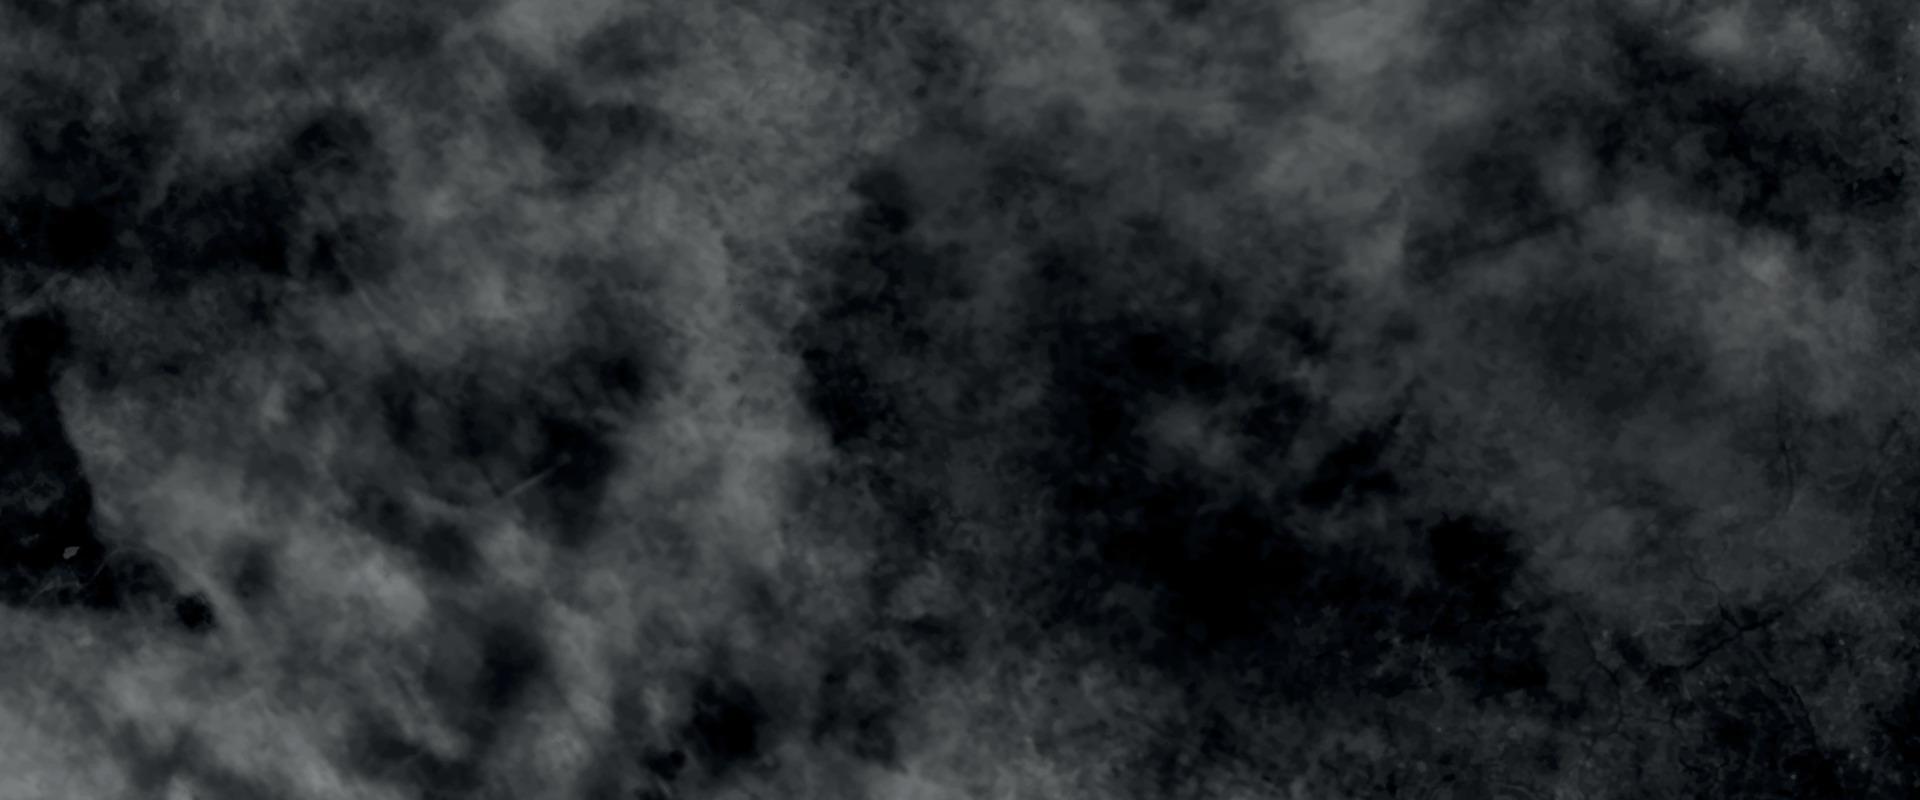 vapor de fumaça abstrata se move em um fundo preto. o conceito de aromaterapia. névoa branca isolada no fundo preto, efeito esfumaçado para fotos e obras de arte. lindo grunge aquarela cinza. vetor